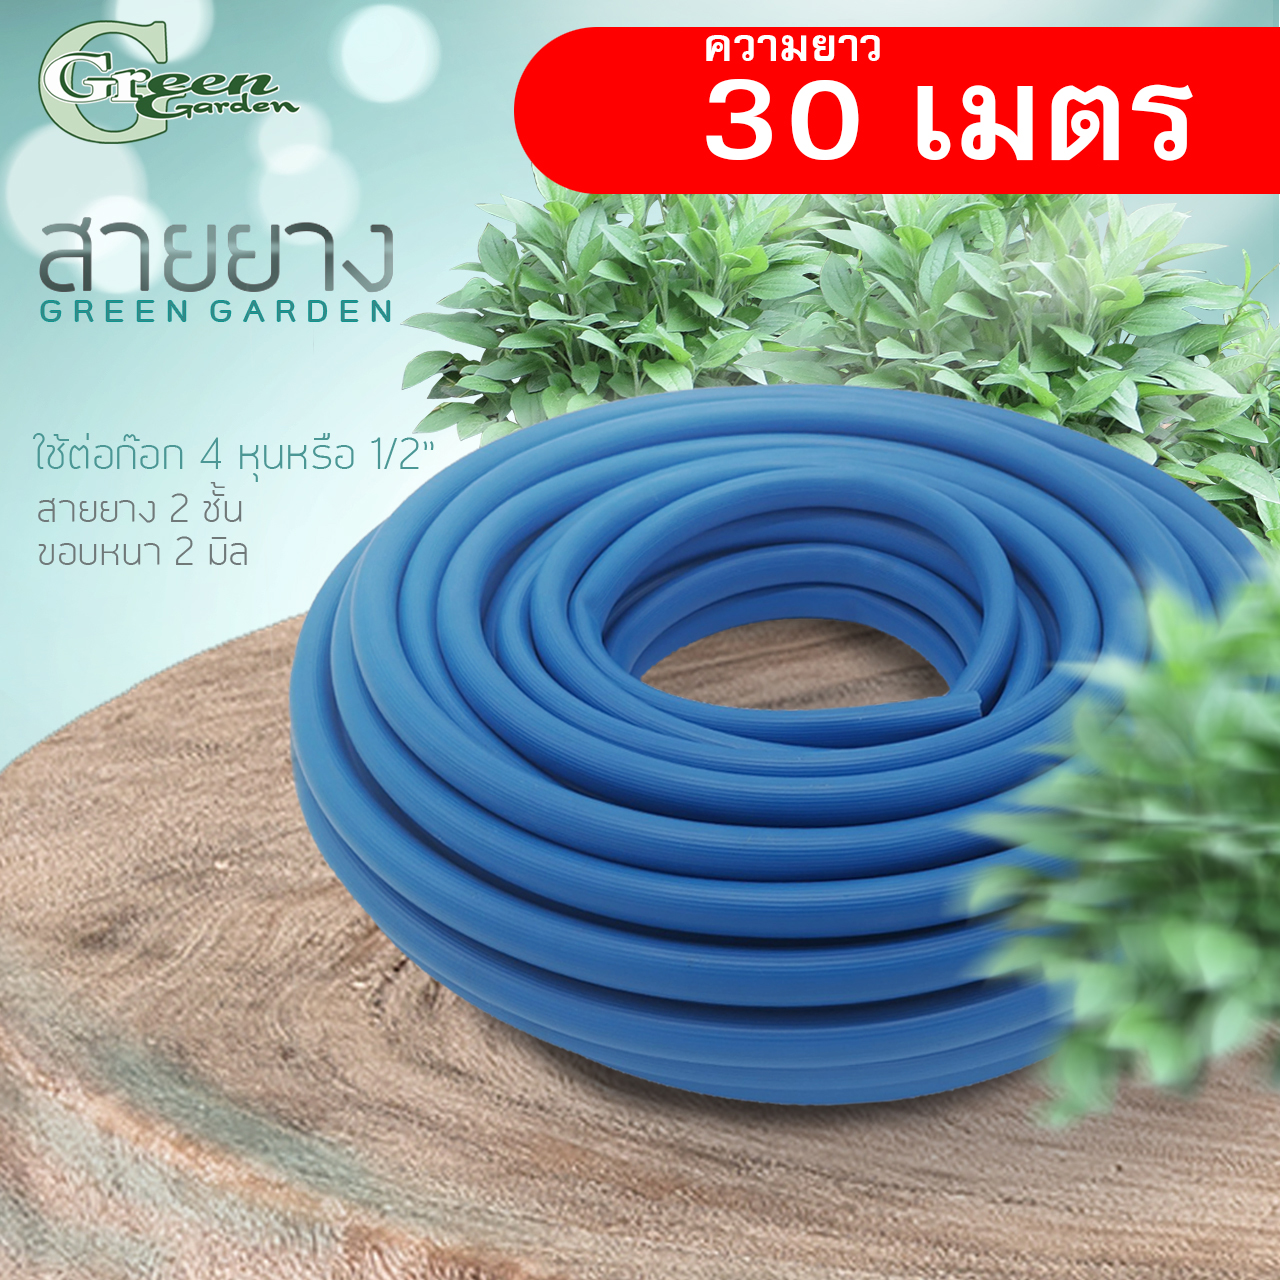 สายยางยาว 30 เมตร PVC สีน้ำเงิน (ไม่ใช่ฟ้าเด้ง) ขนาด 5/8 (เส้นผ่าศูนย์กลางวงใน15มิล) ใช้กับก็อกน้ำ 4 หุน